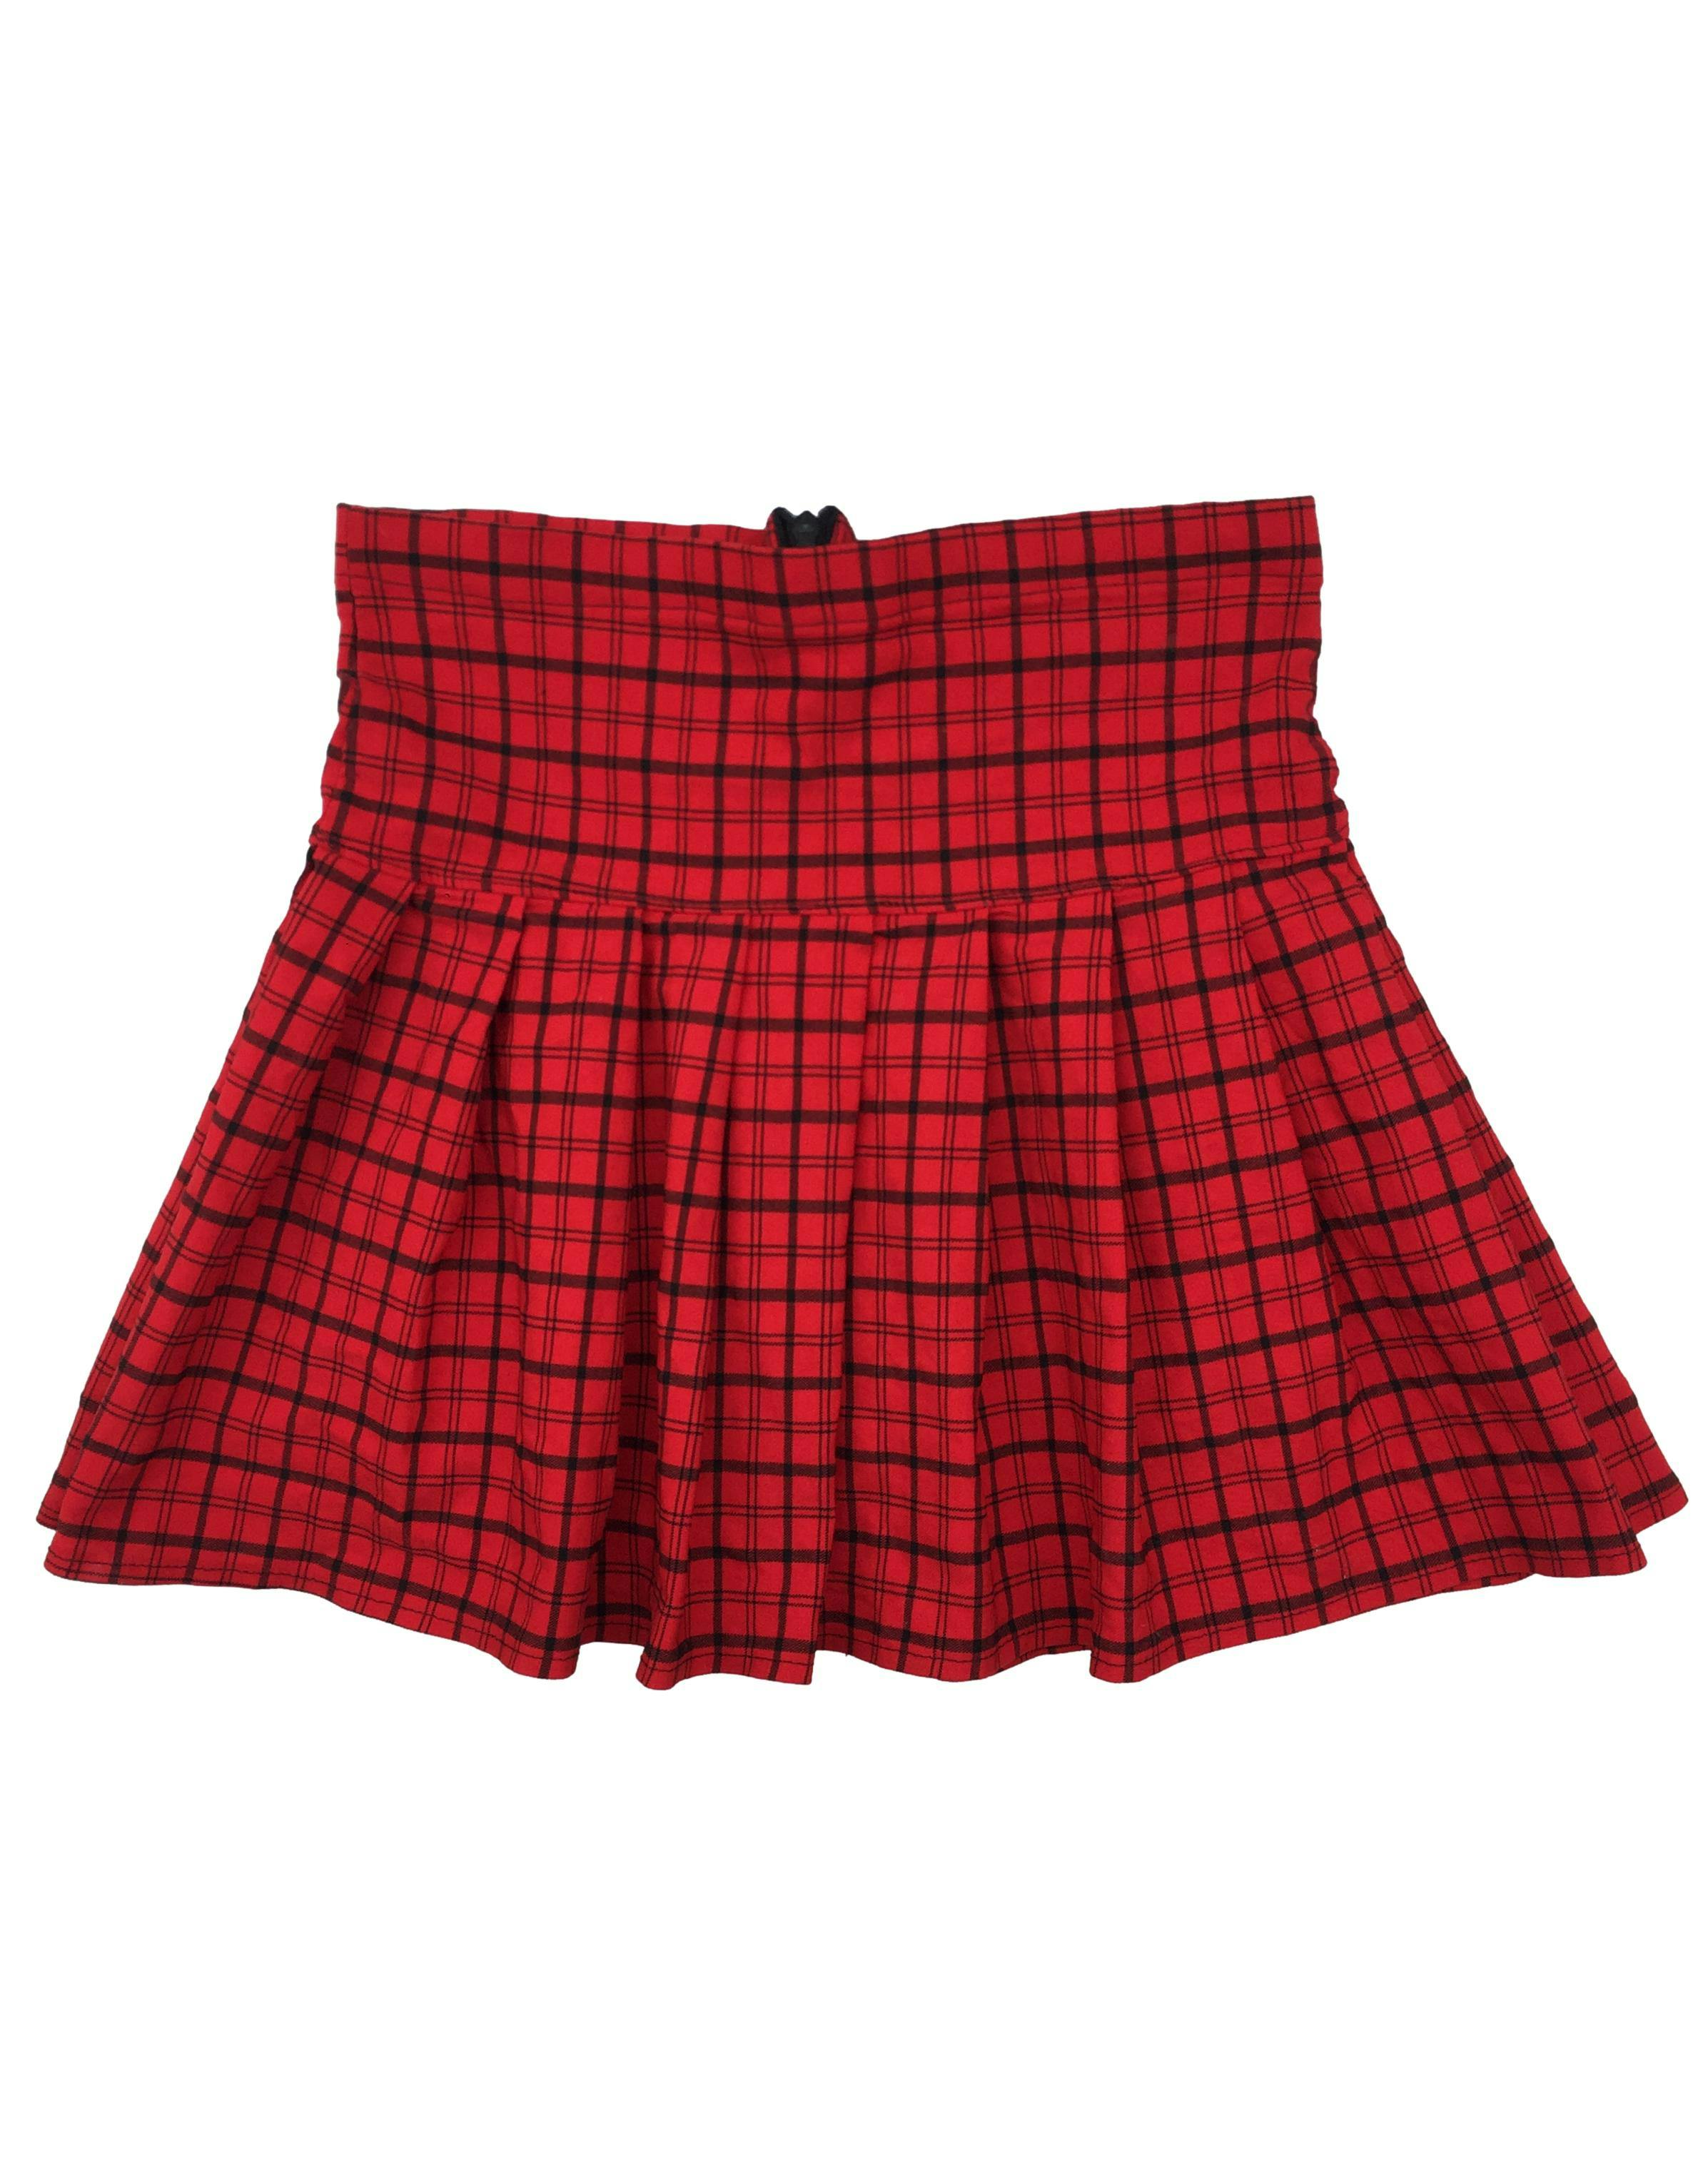 Falda roja a cuadros plisada con pretina ancha, de tela stretch. Cintura 66cm sin estirar, Largo 35cm.